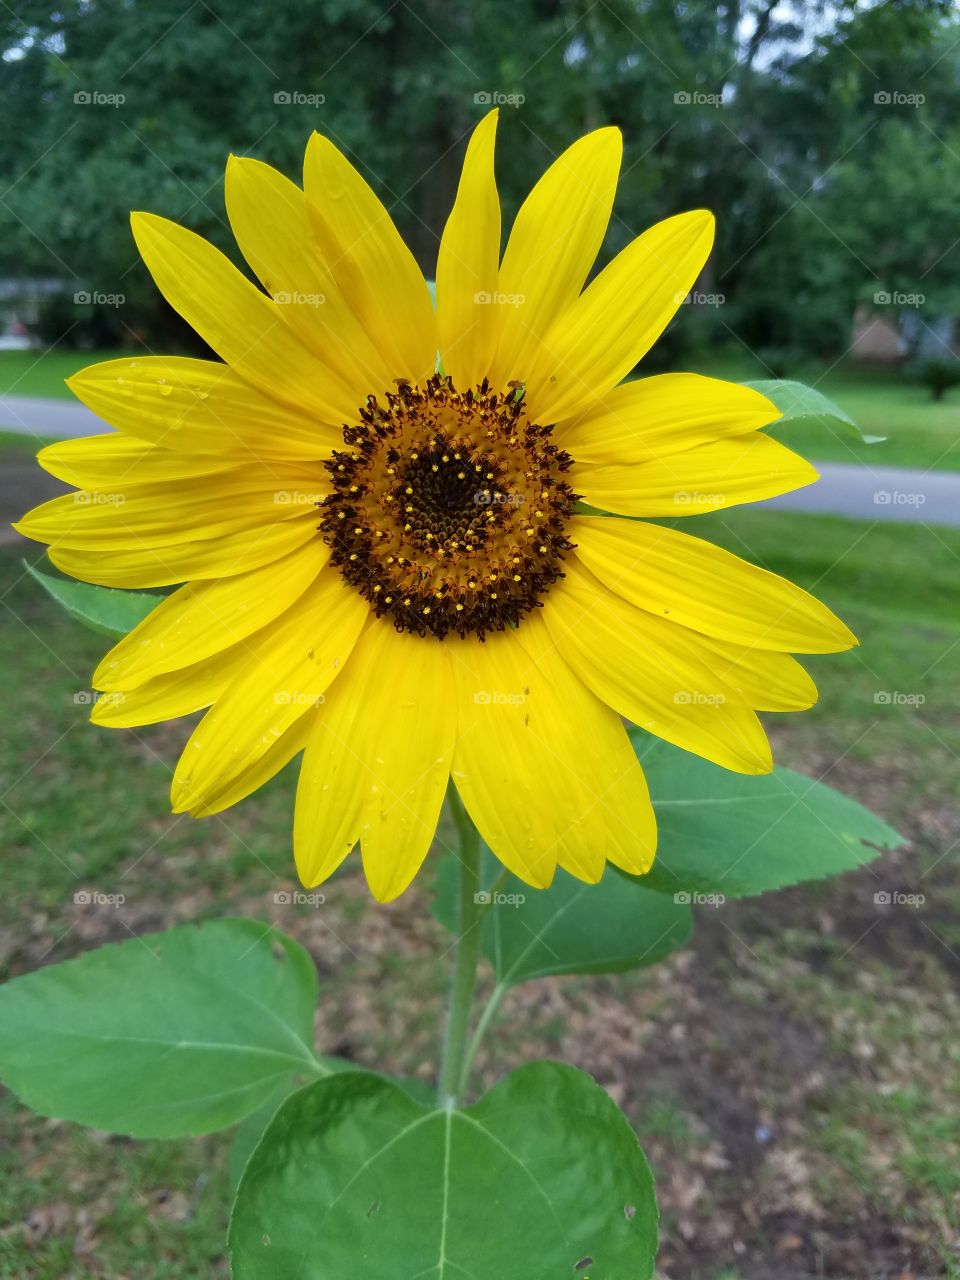 Alabama sunflower